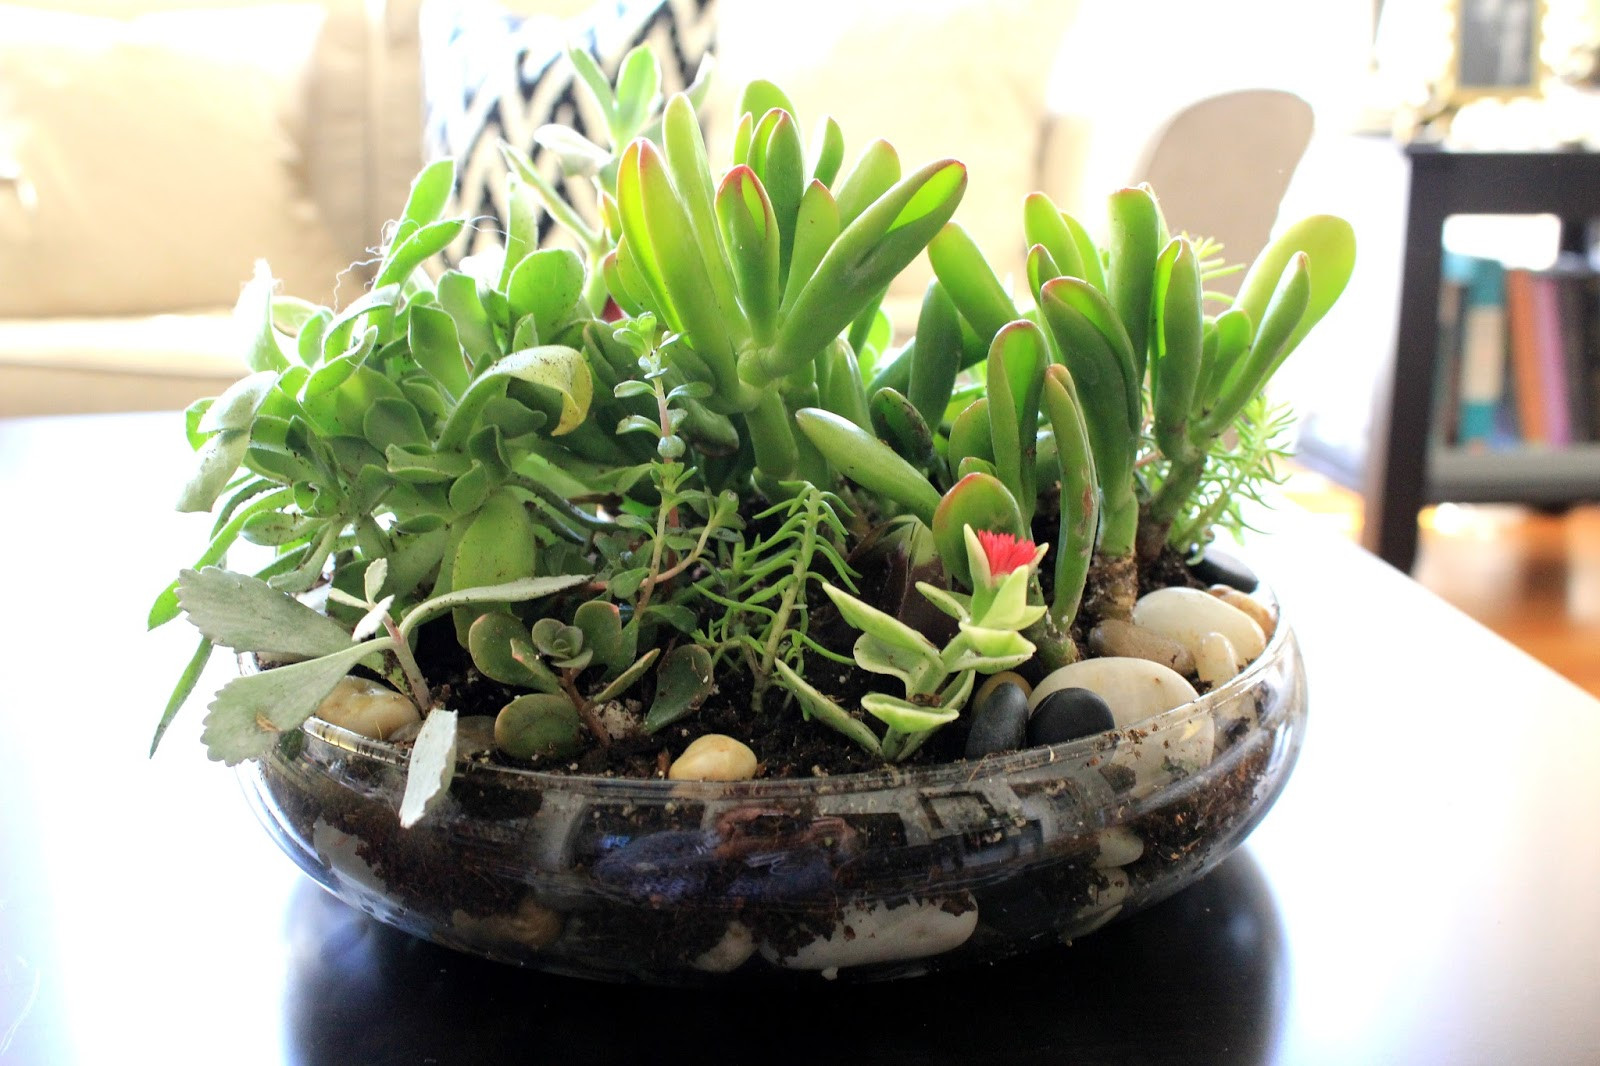 Best ideas about Succulent Terrarium DIY
. Save or Pin Cup Half Full Succulent Terrarium DIY Now.